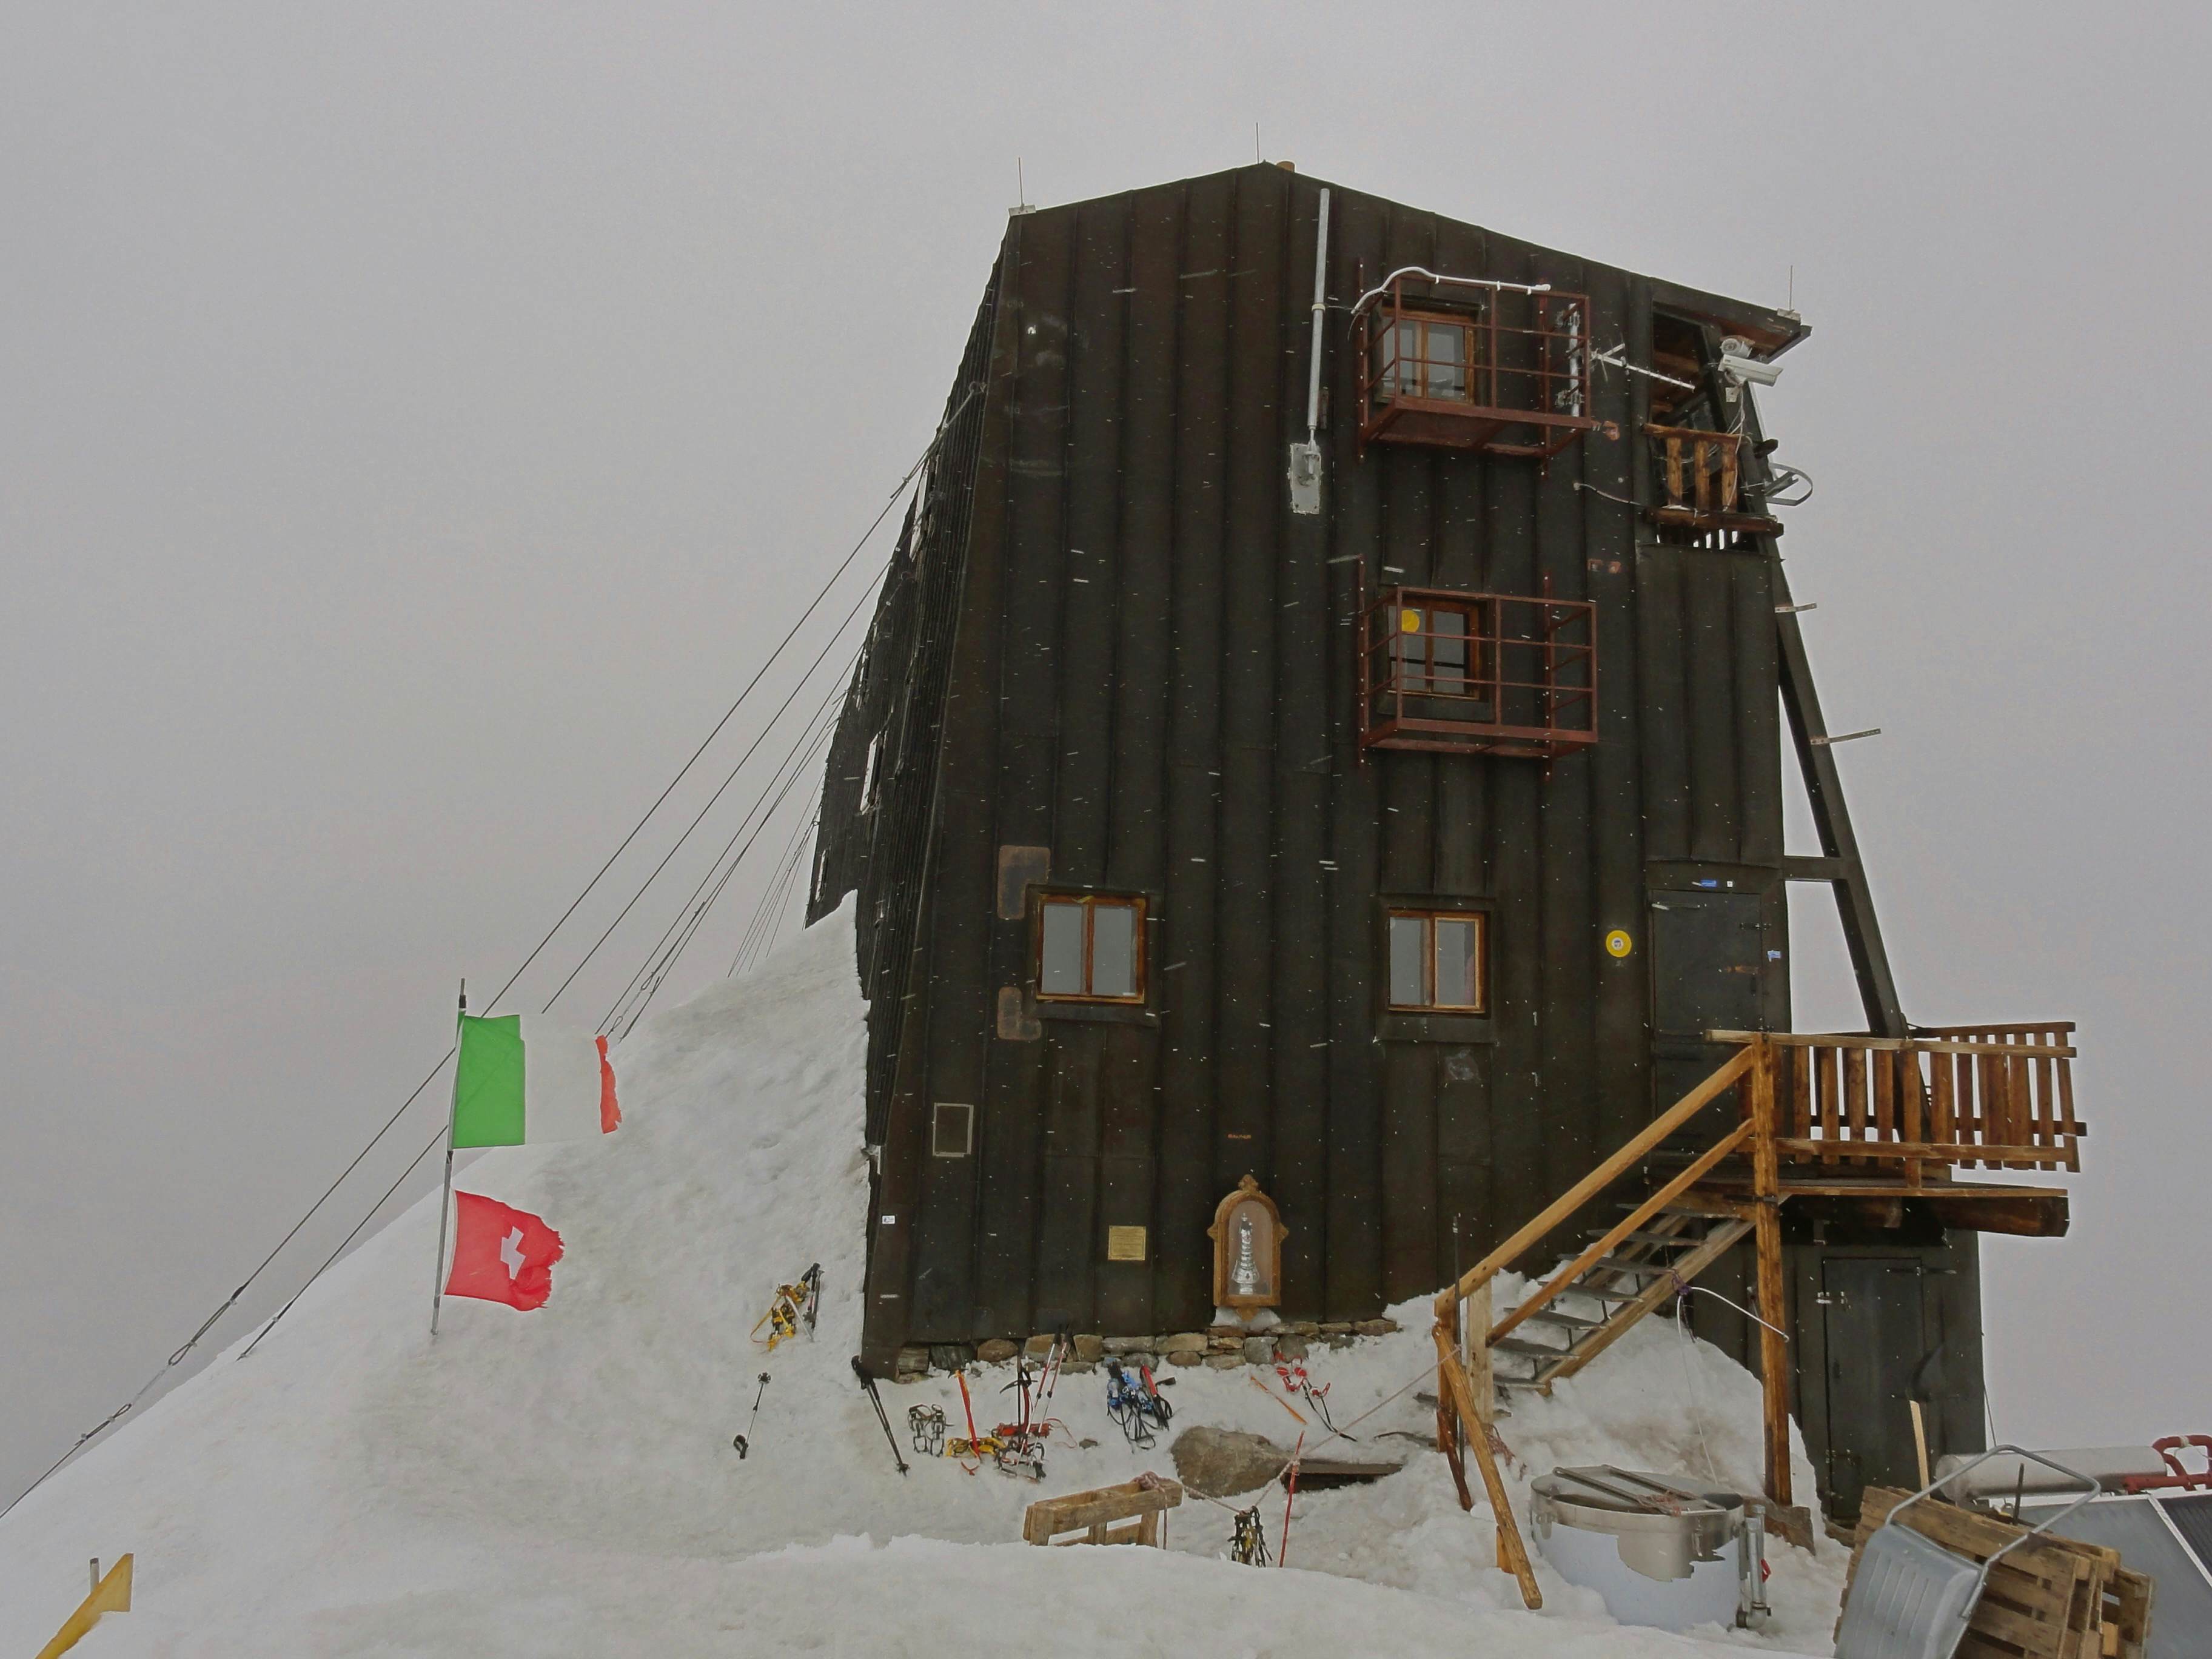 Capanna Regina Margherita im Nebel. Die höchste Hütte Europas!